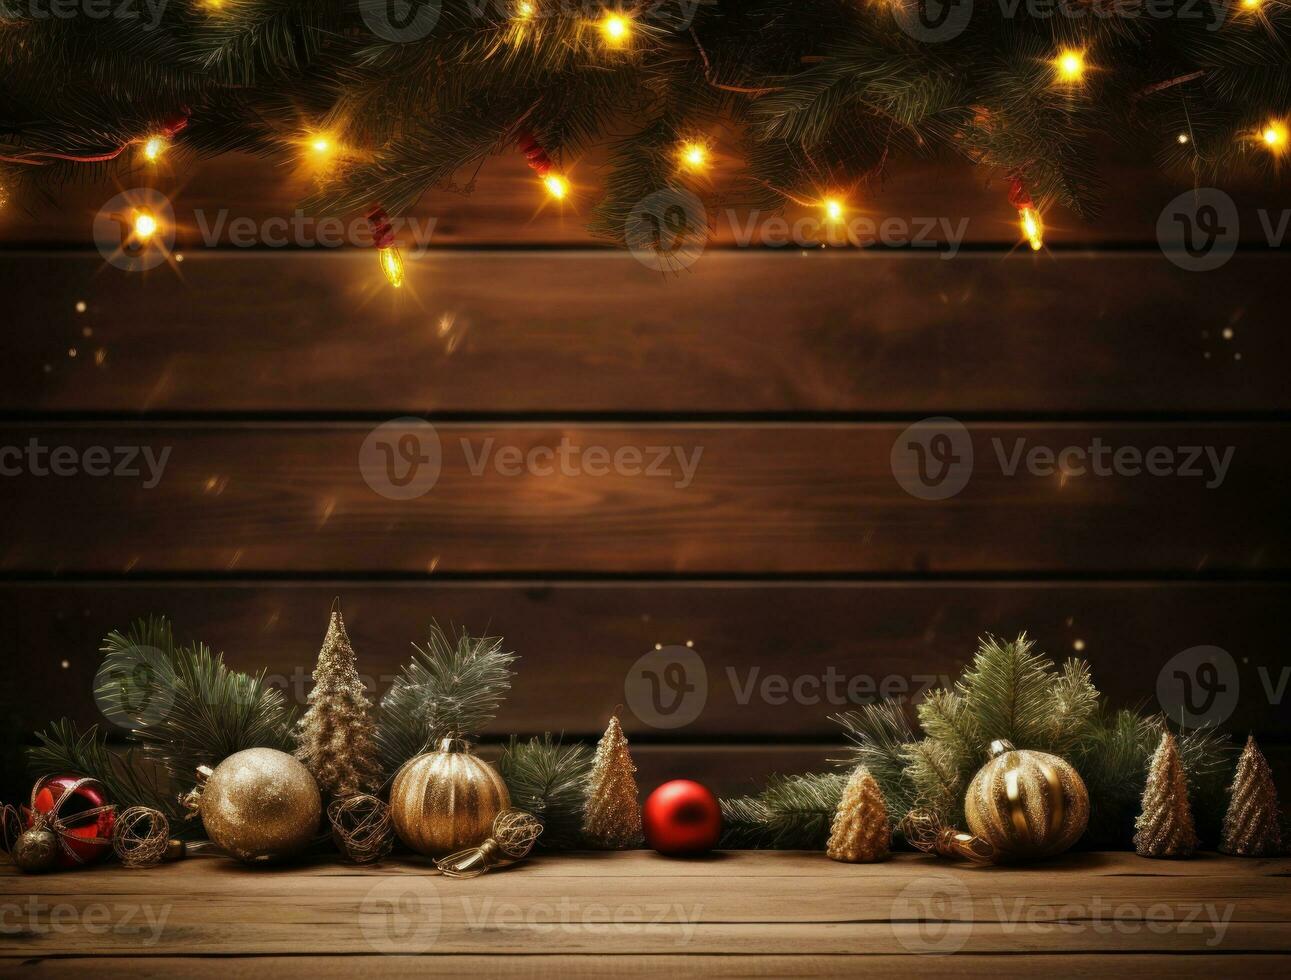 de madera antecedentes con Navidad luces foto